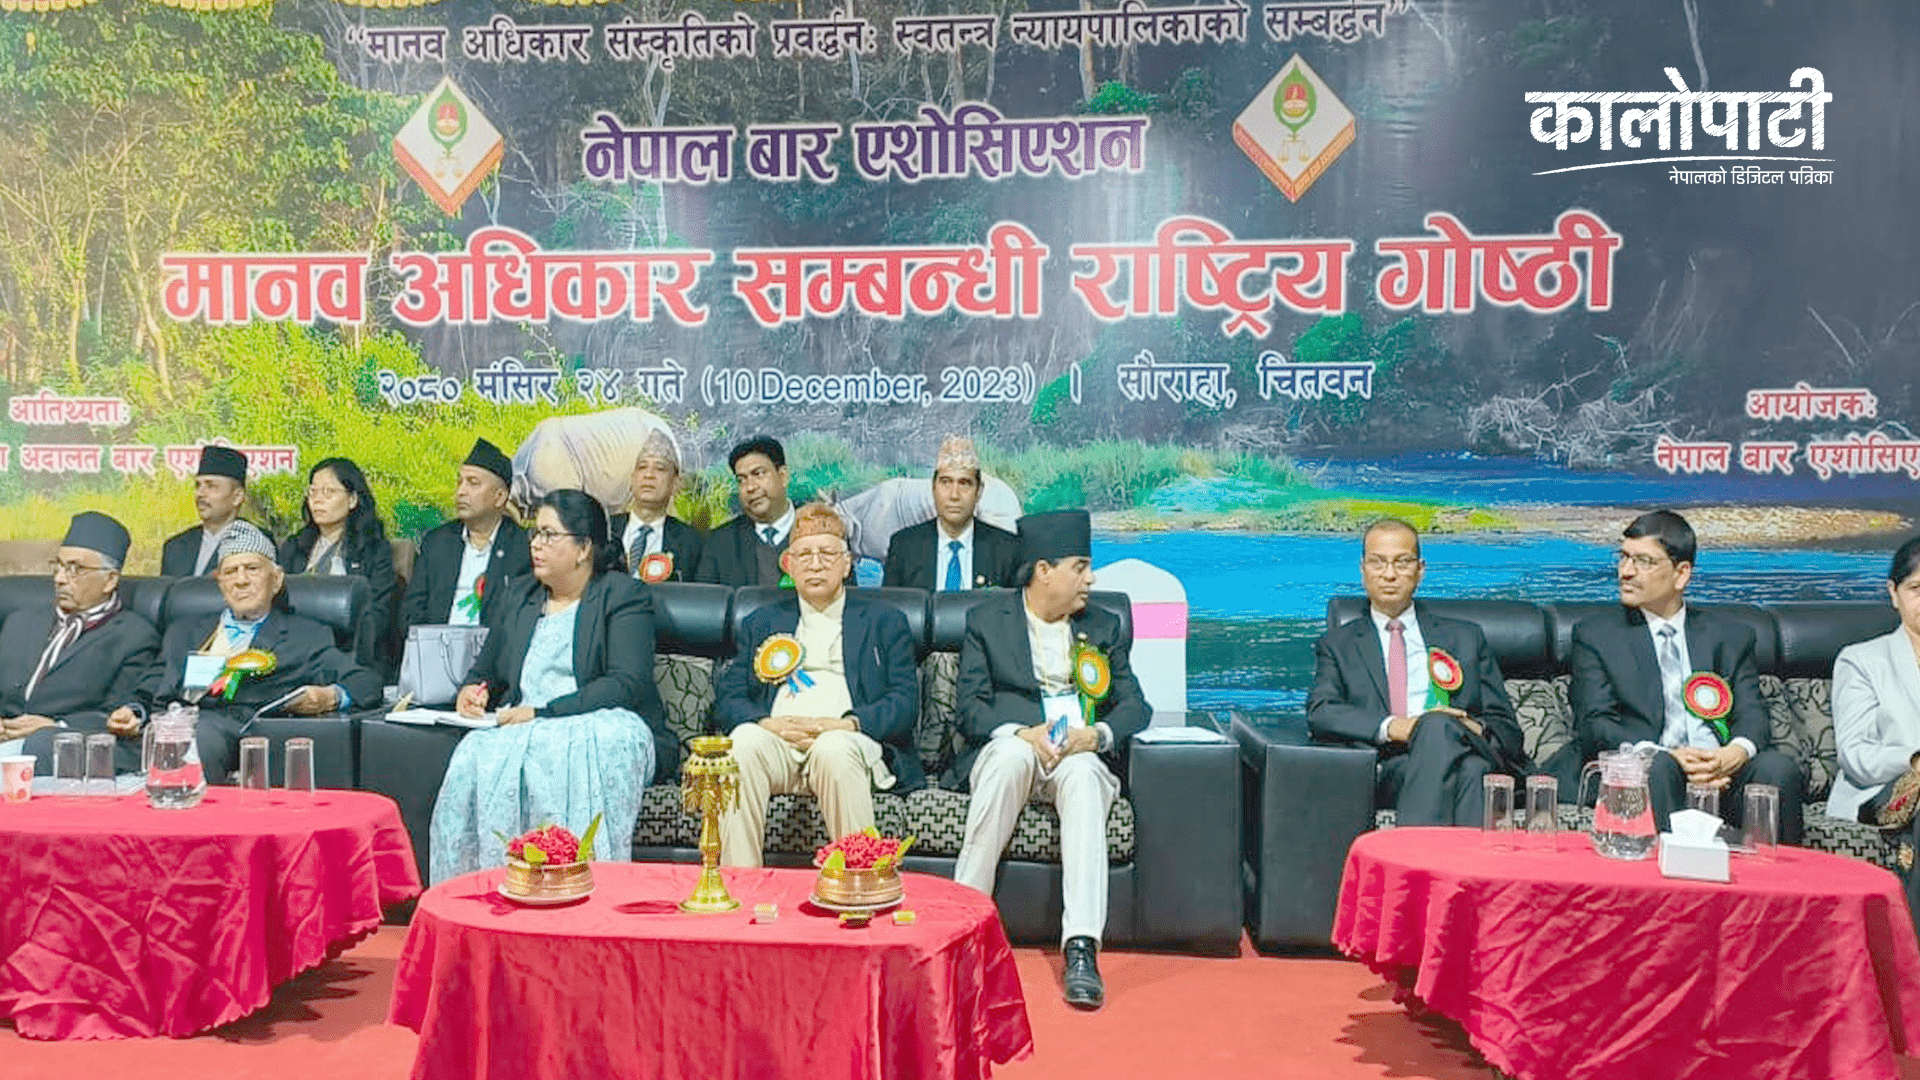 सौराहामा नेपाल बारको राष्ट्रिय गोष्ठी सुरु, सर्वोच्च अदालतका न्यायाधीश आनन्दमोहन भट्टराईद्धारा उद्घाटन